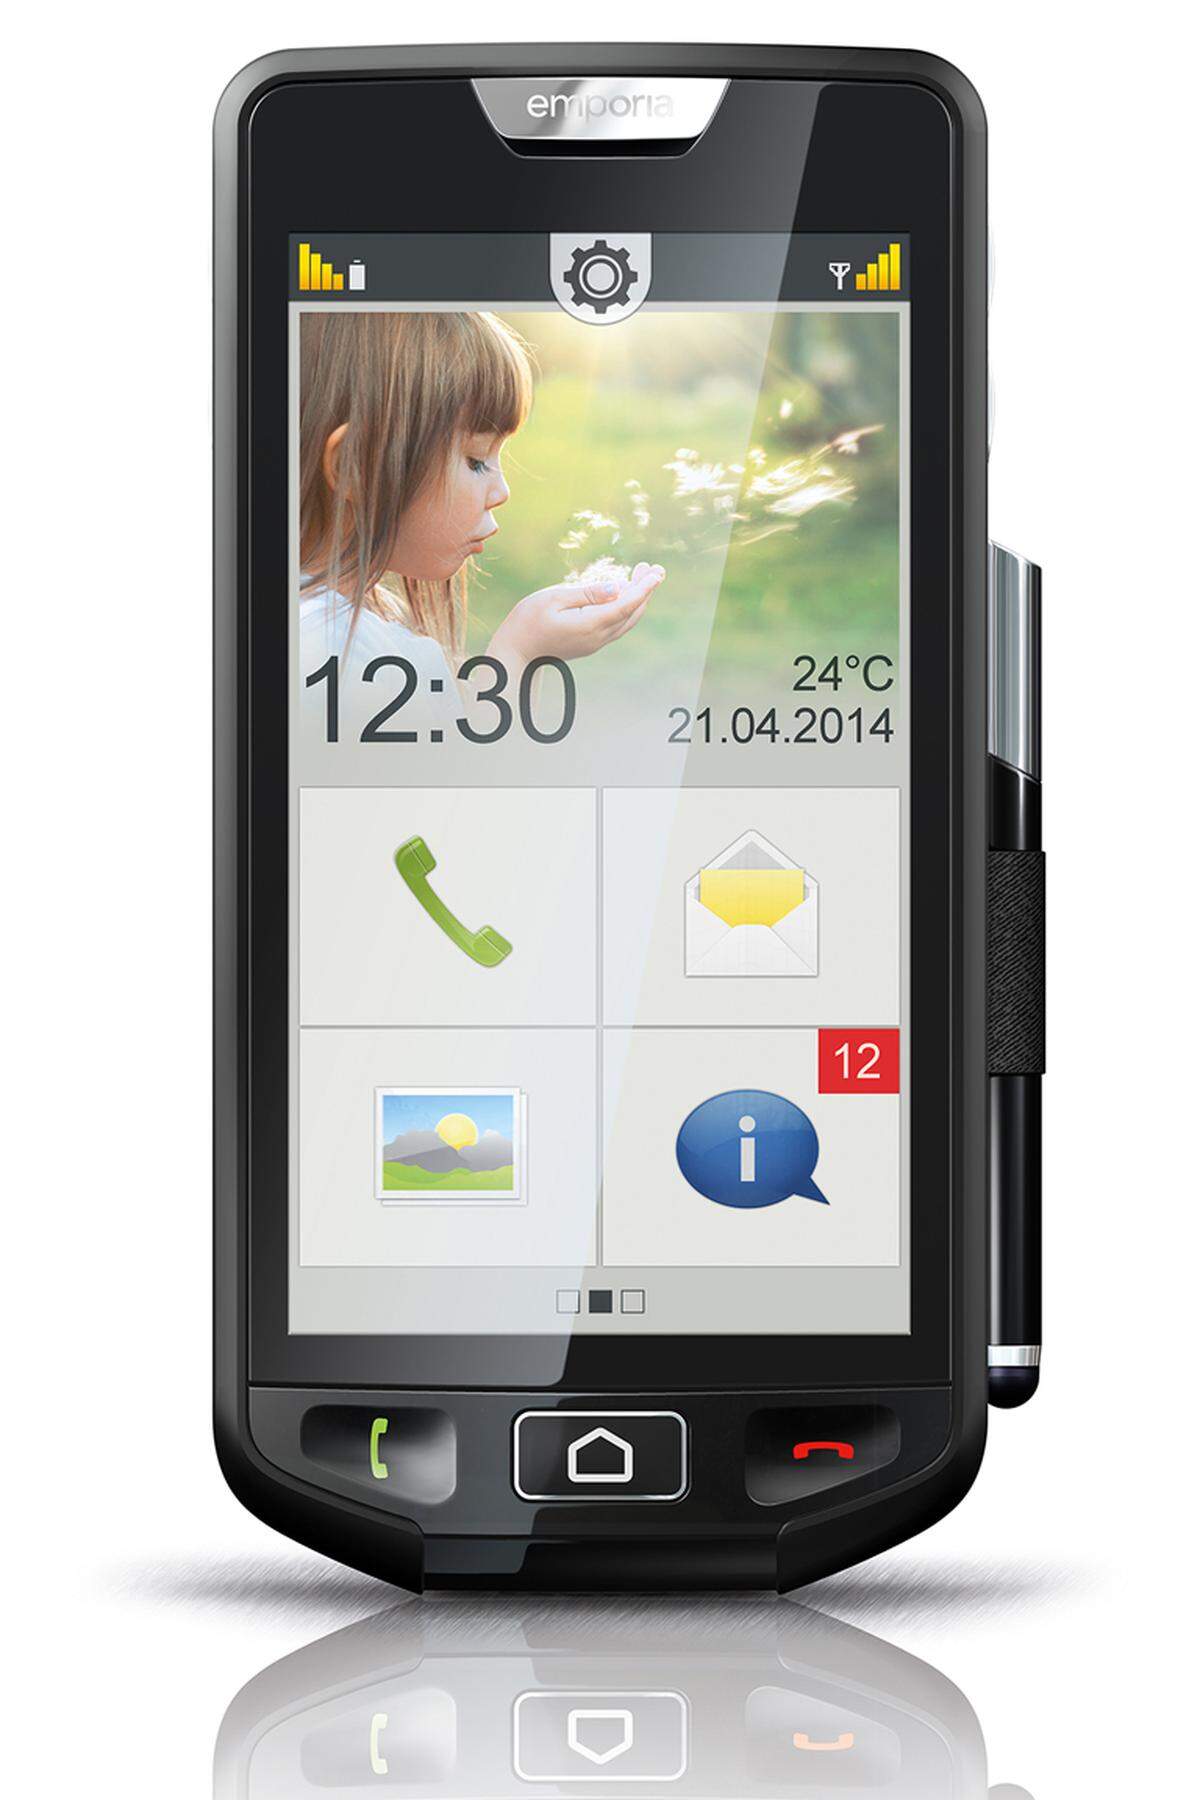 Der oberösterreichische Hersteller zeigt am Mobile World Congress sein erstes Touchscreen-Smartphone für ältere Nutzer. Das Betriebssystem Android 4.3 wurde so angepasst, dass der Touchscreen für Senioren gut und einfach nutzbar ist. Die Kamera ist mit 8 Megapixel auch nicht zu knapp bemessen.